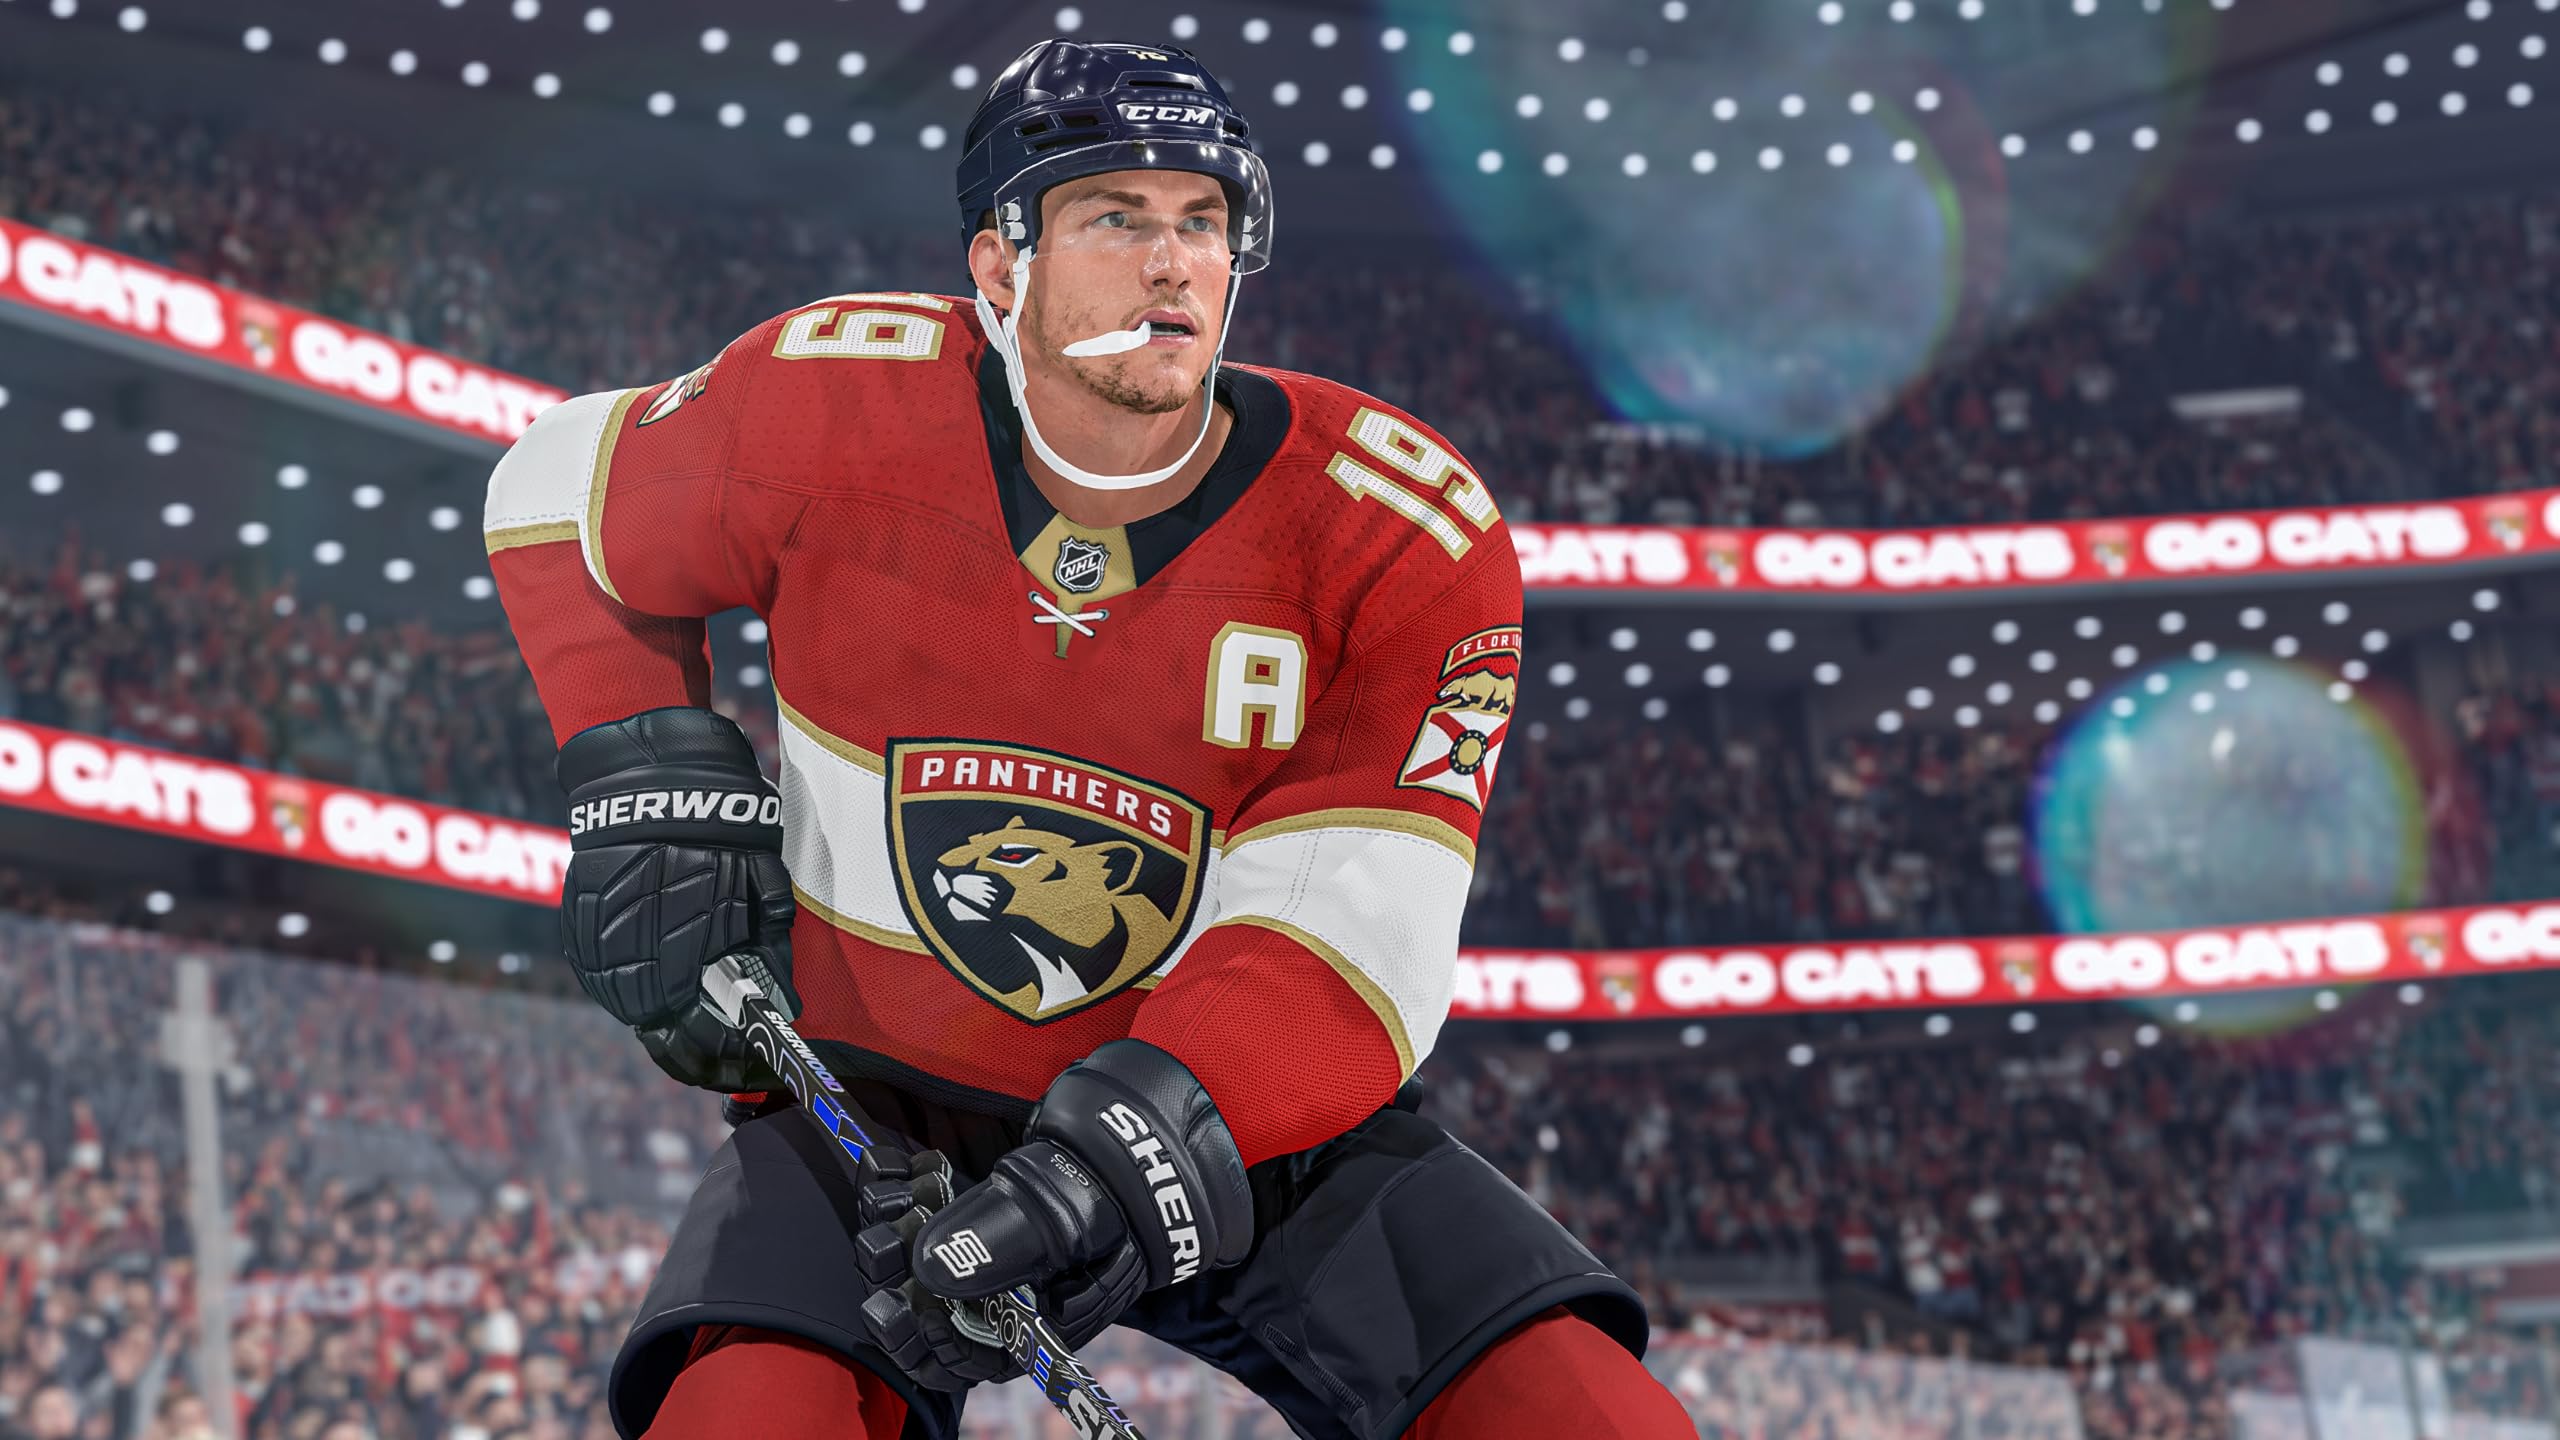 NHL 24 - PlayStation 4